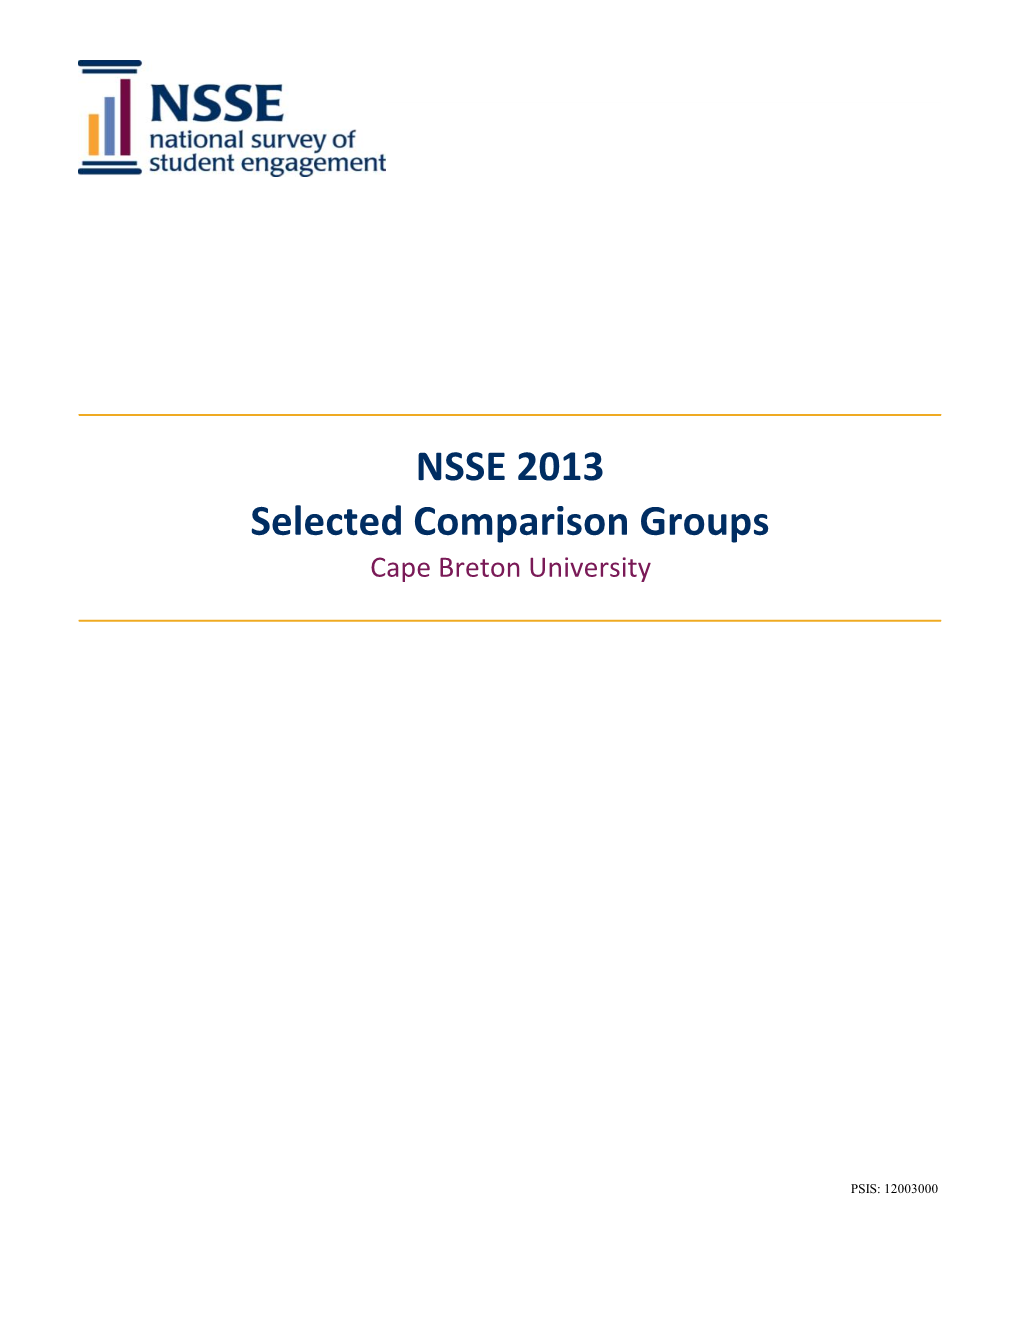 NSSE 2013 Selected Comparison Groups Cape Breton University